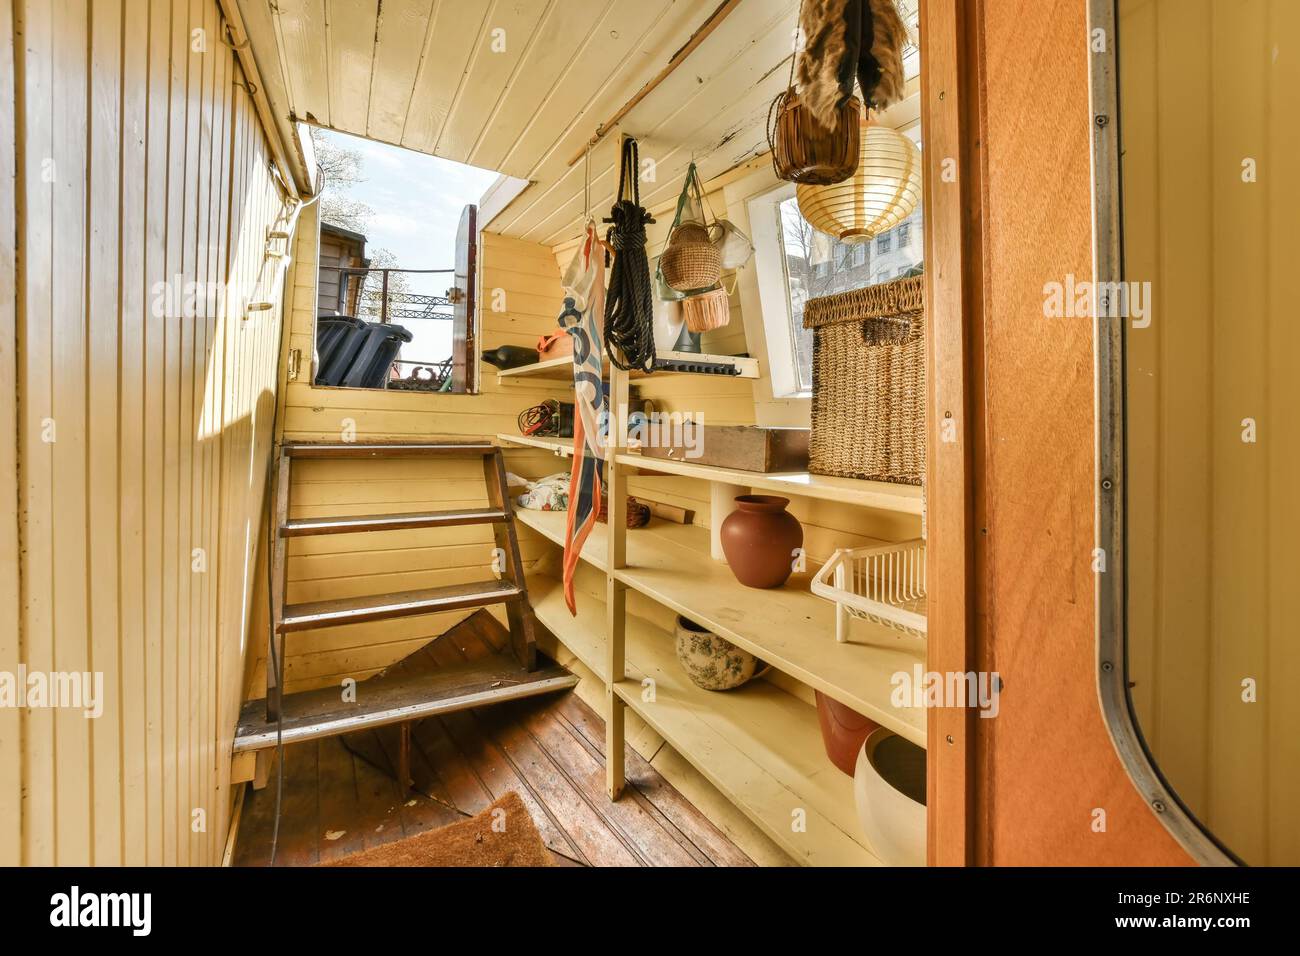 Das Innere eines Lkws mit Holzverkleidung an den Wänden und Holzregalen im Innenraum ist gelb lackiert Stockfoto